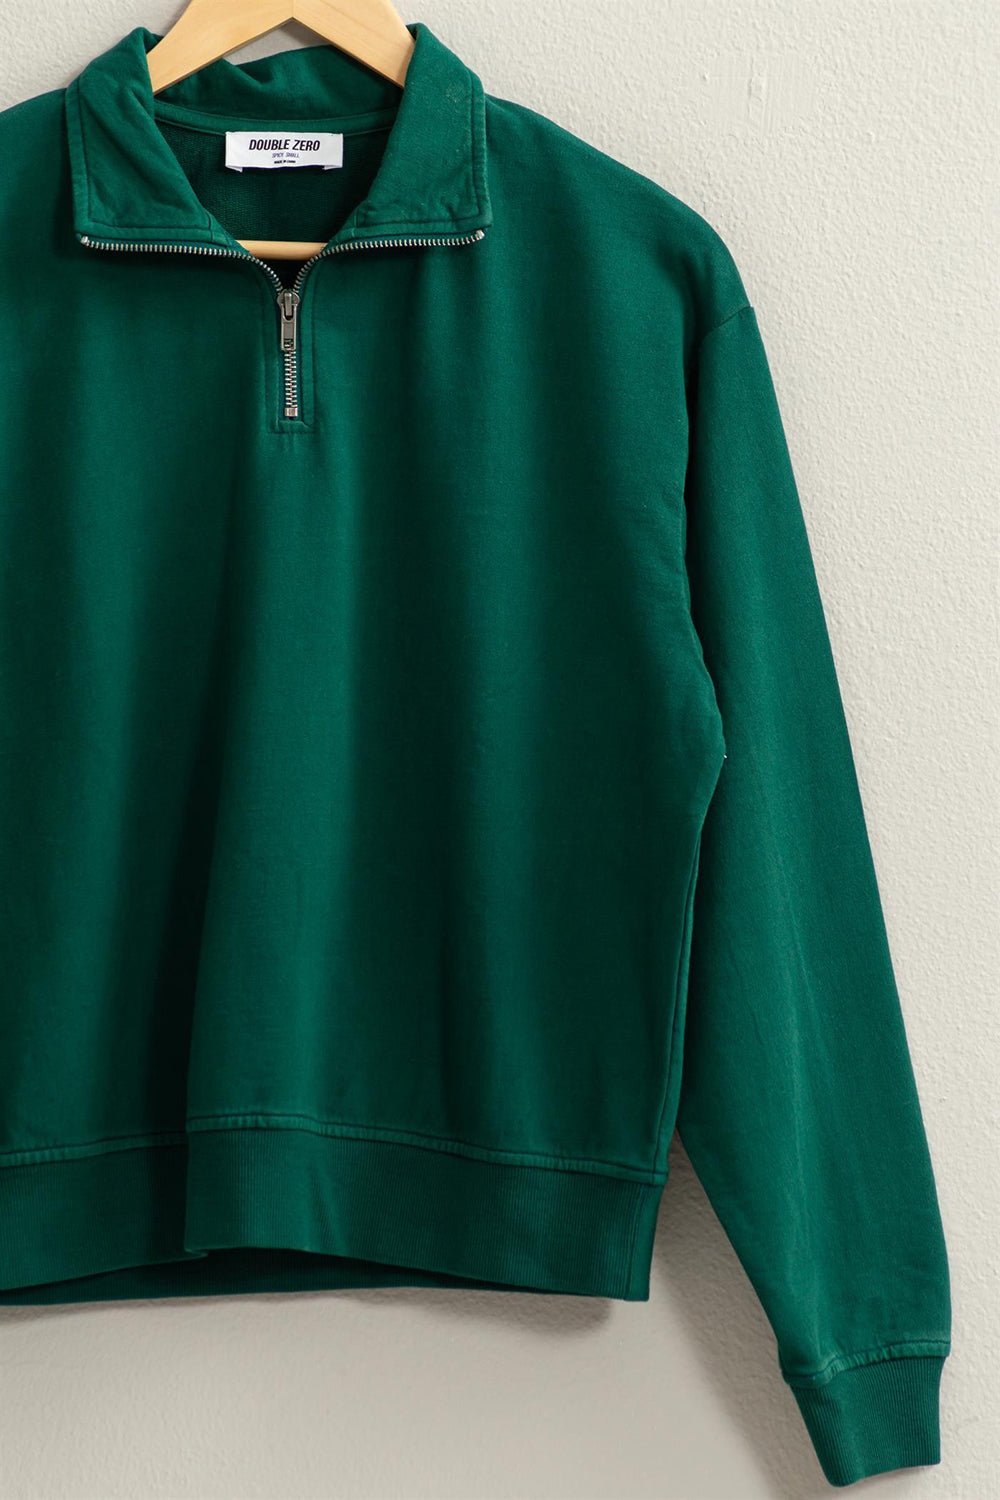 HYFVE Half Zip Drop Shoulder Sweatshirt - Happily Ever Atchison Shop Co.